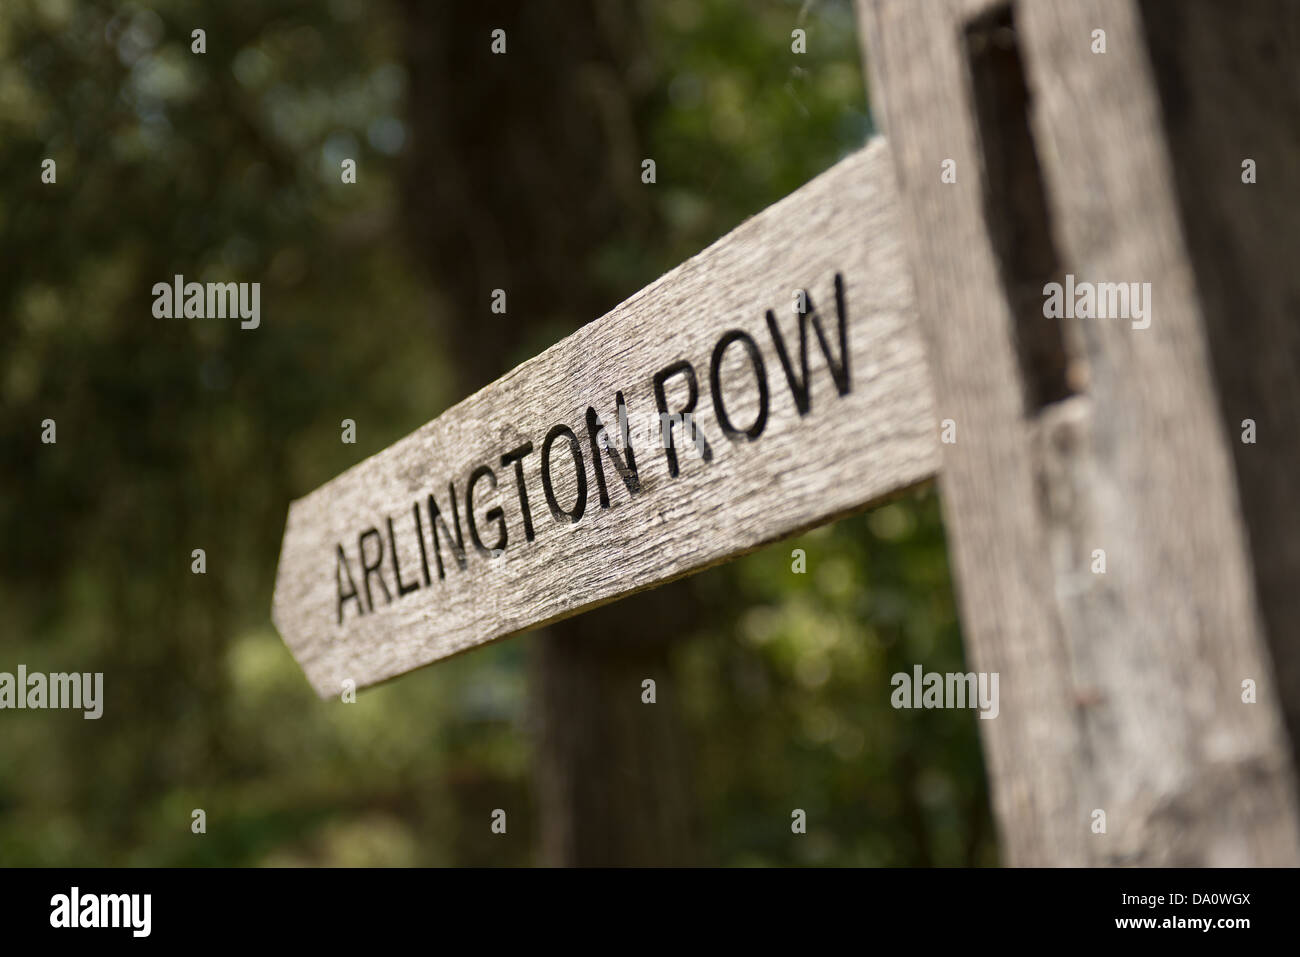 Ein Zeichen in Bibury in den Cotswolds, Gloucestershire, UK. Besucher zu Arlington Row Stockfoto